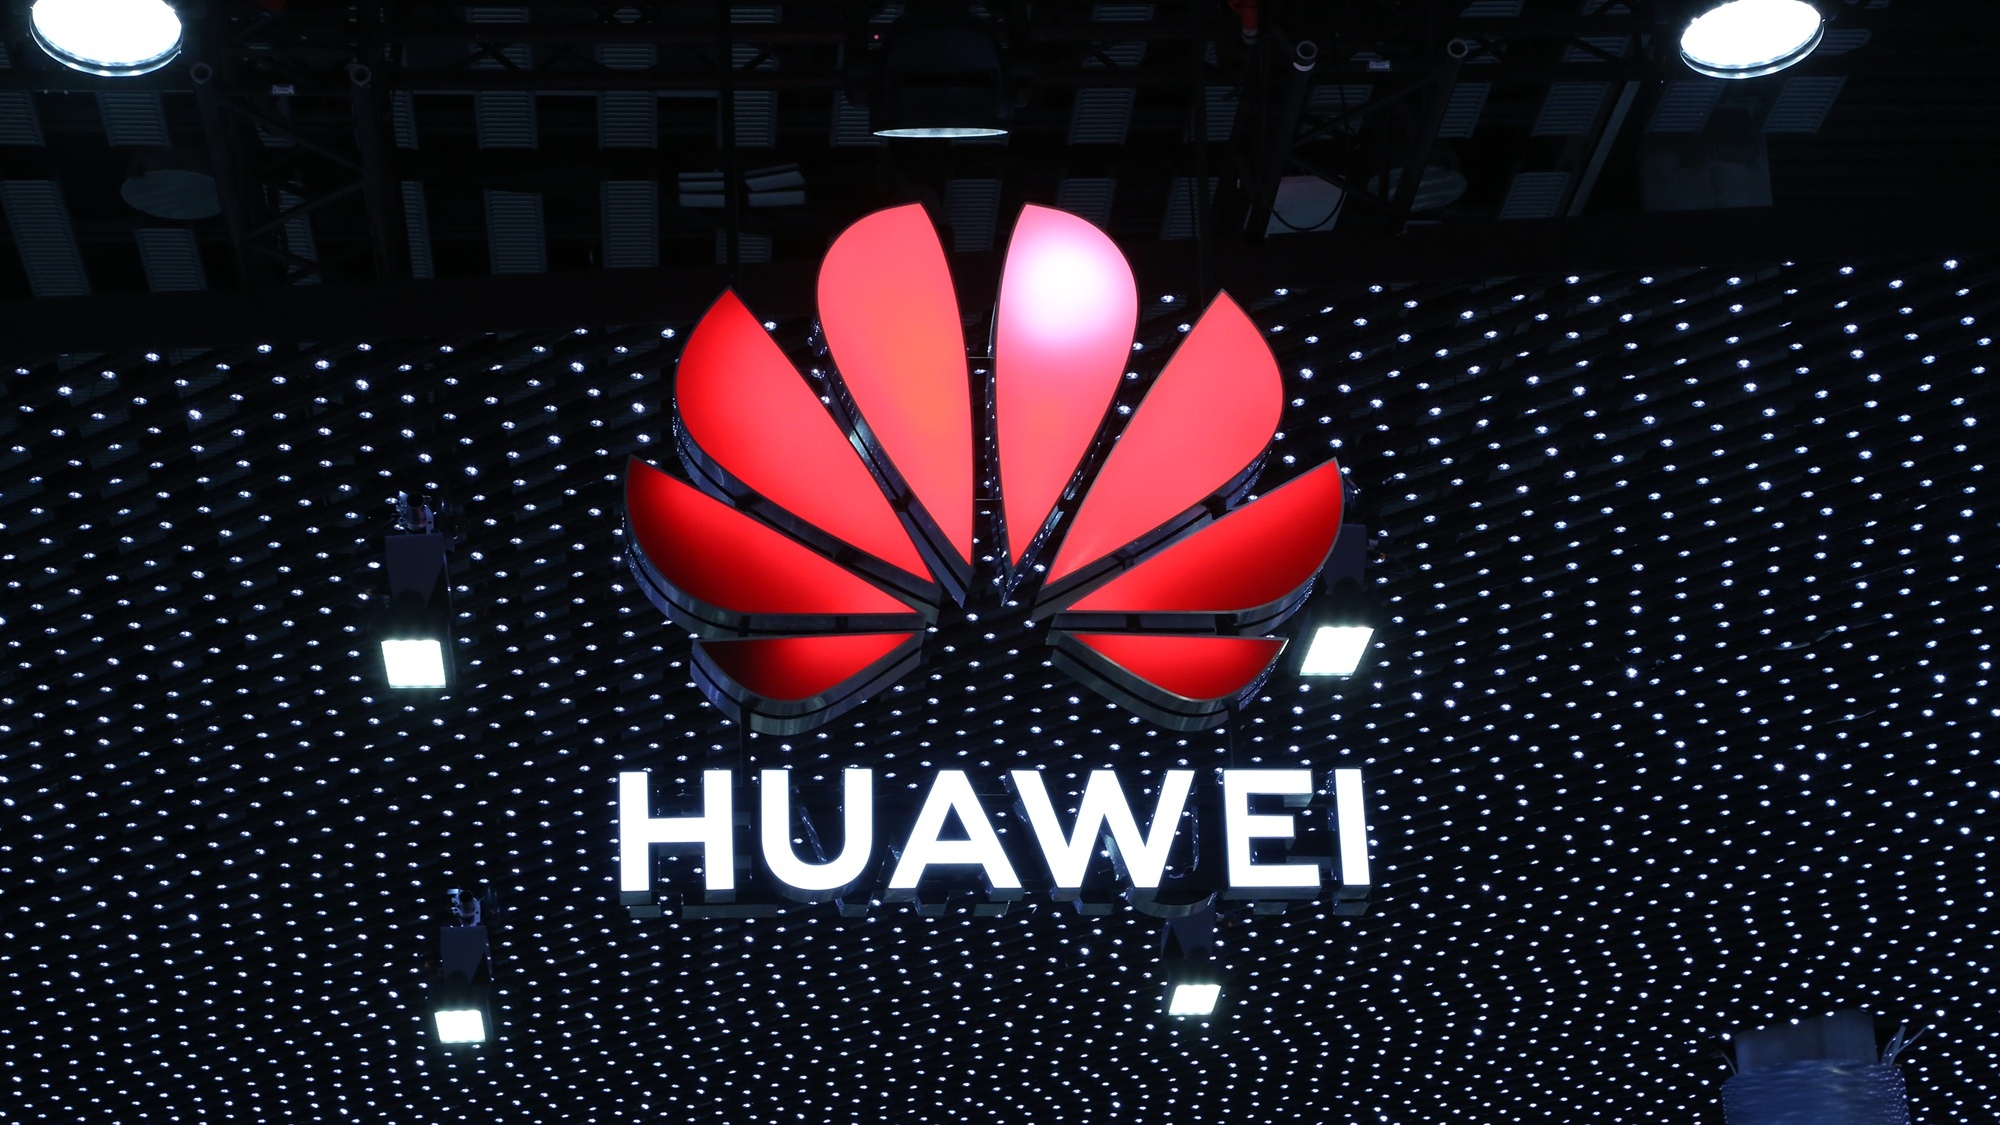 Huawei, interdite d'installer des équipements 5G au Royaume-Uni dès l'année prochaine